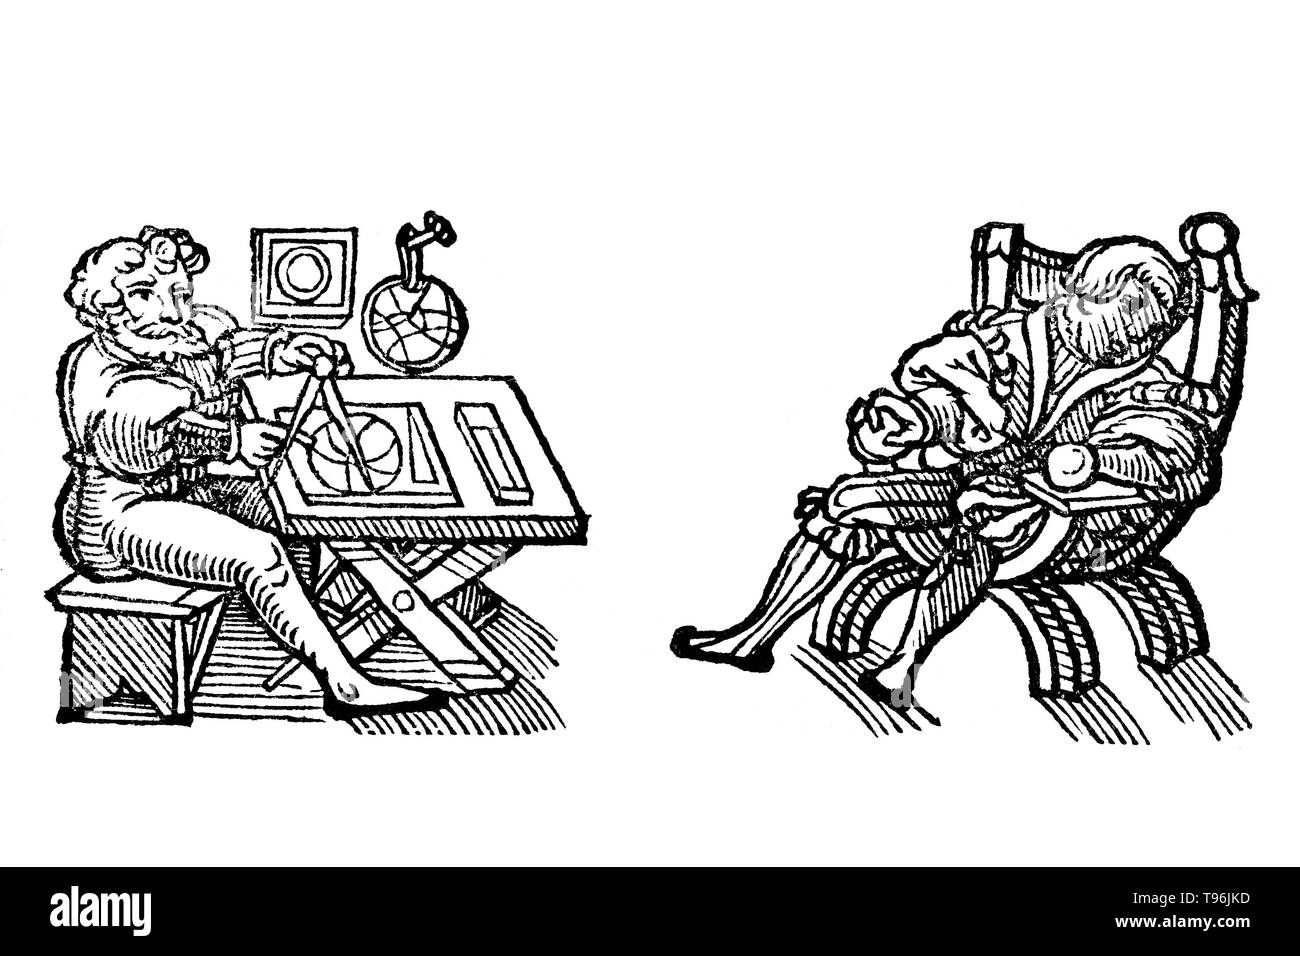 Gravure sur bois illustration de Der gantzen Artzenei, 1542. Johann Dryander (Eichmann) (27 juin 1500 - 20 décembre 1560) était un anatomiste allemand, astronome et médecin. En 1535, il est nommé professeur de médecine à l'Université de Marburg. Dryander a été l'un des premiers auteurs de manuels pour illustrer de gravures sur bois et le premier à illustrer une forme galénique de la dissection du cerveau humain. Une édition augmentée de ce livre au début, le sea Anatomiae avant, a été publié en 1537. Banque D'Images